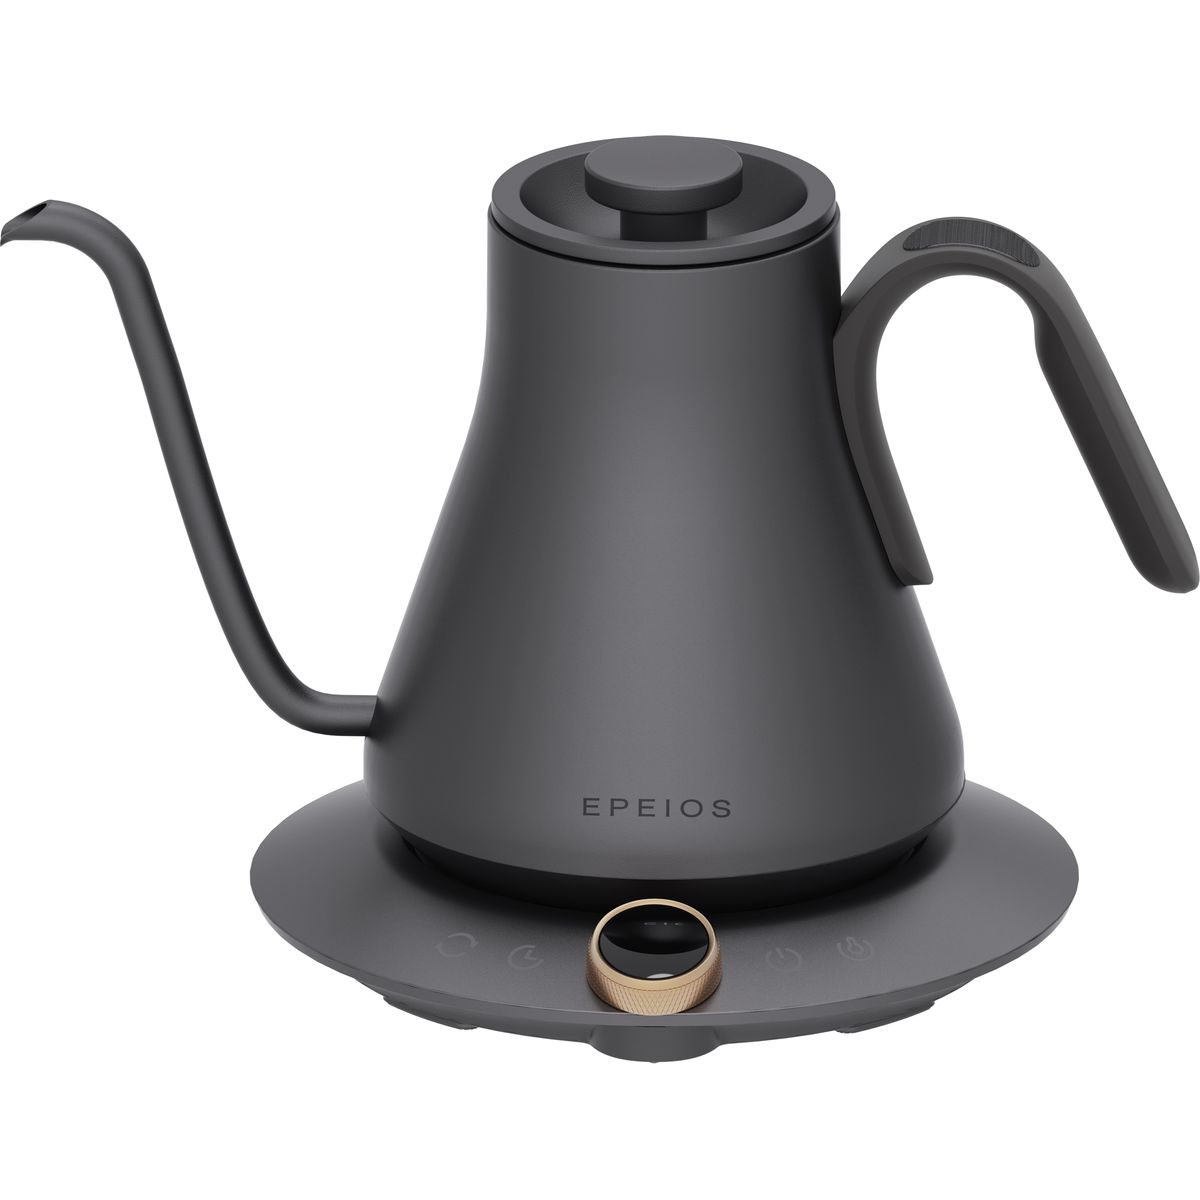 EPEIOS ドリップケトル 0.9L コーヒーケトル 空焚き防止 ブラック